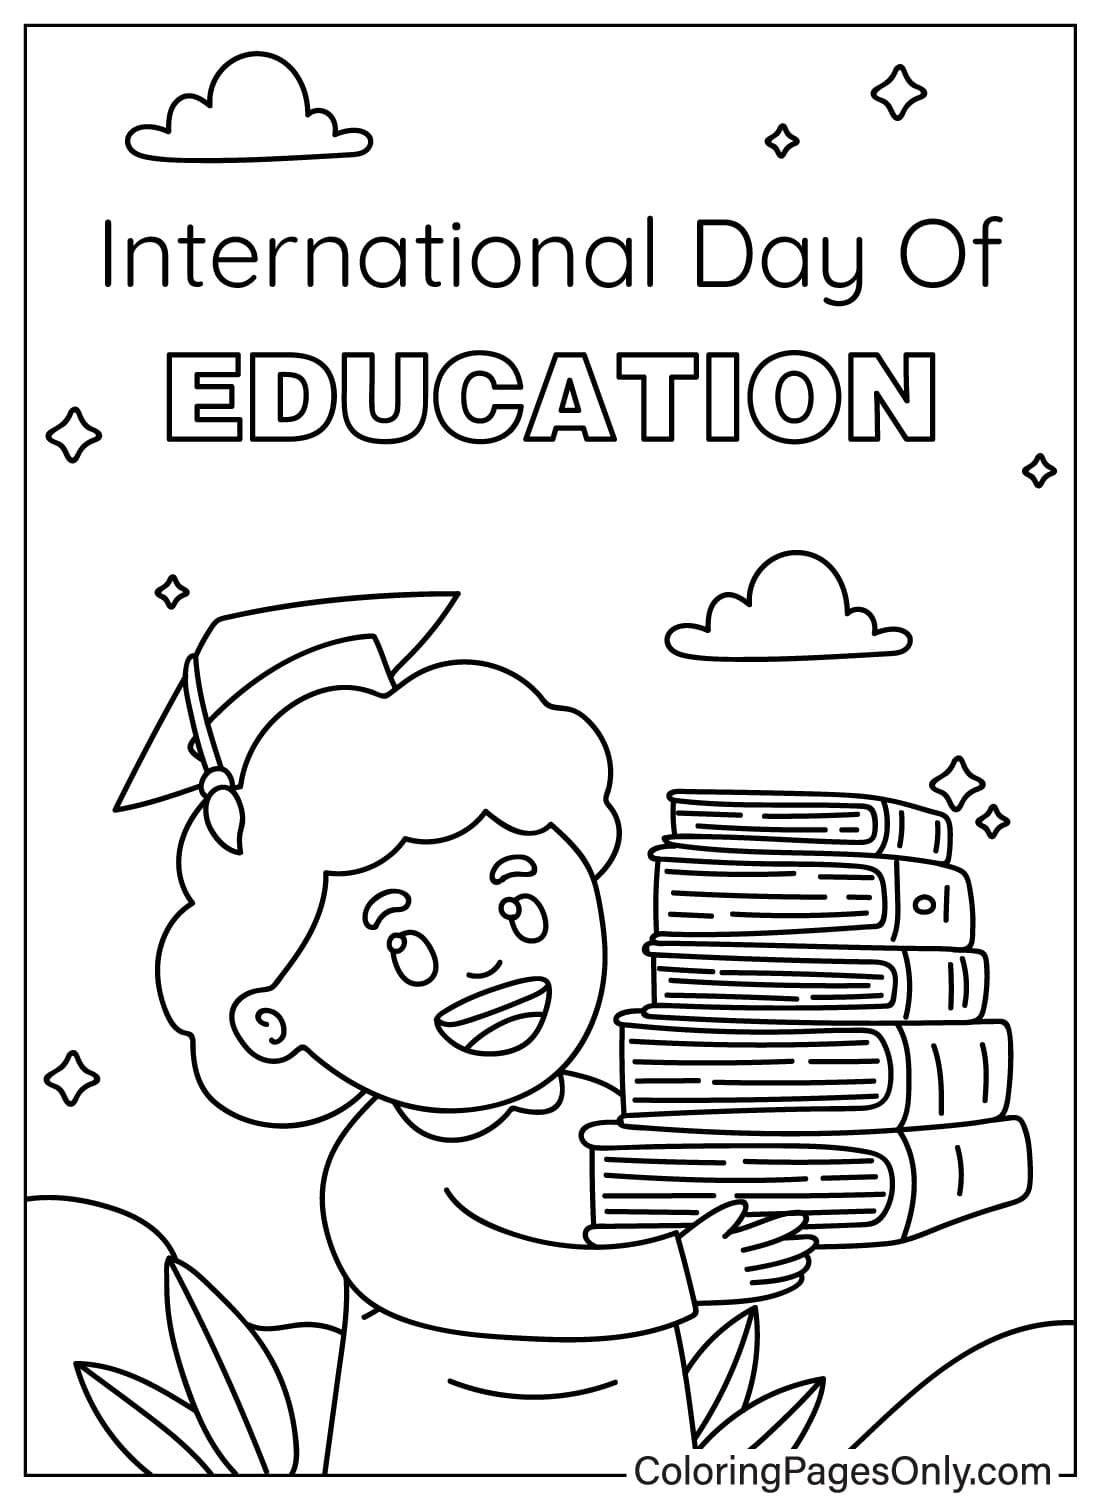 国际教育日 打印国际教育日彩页